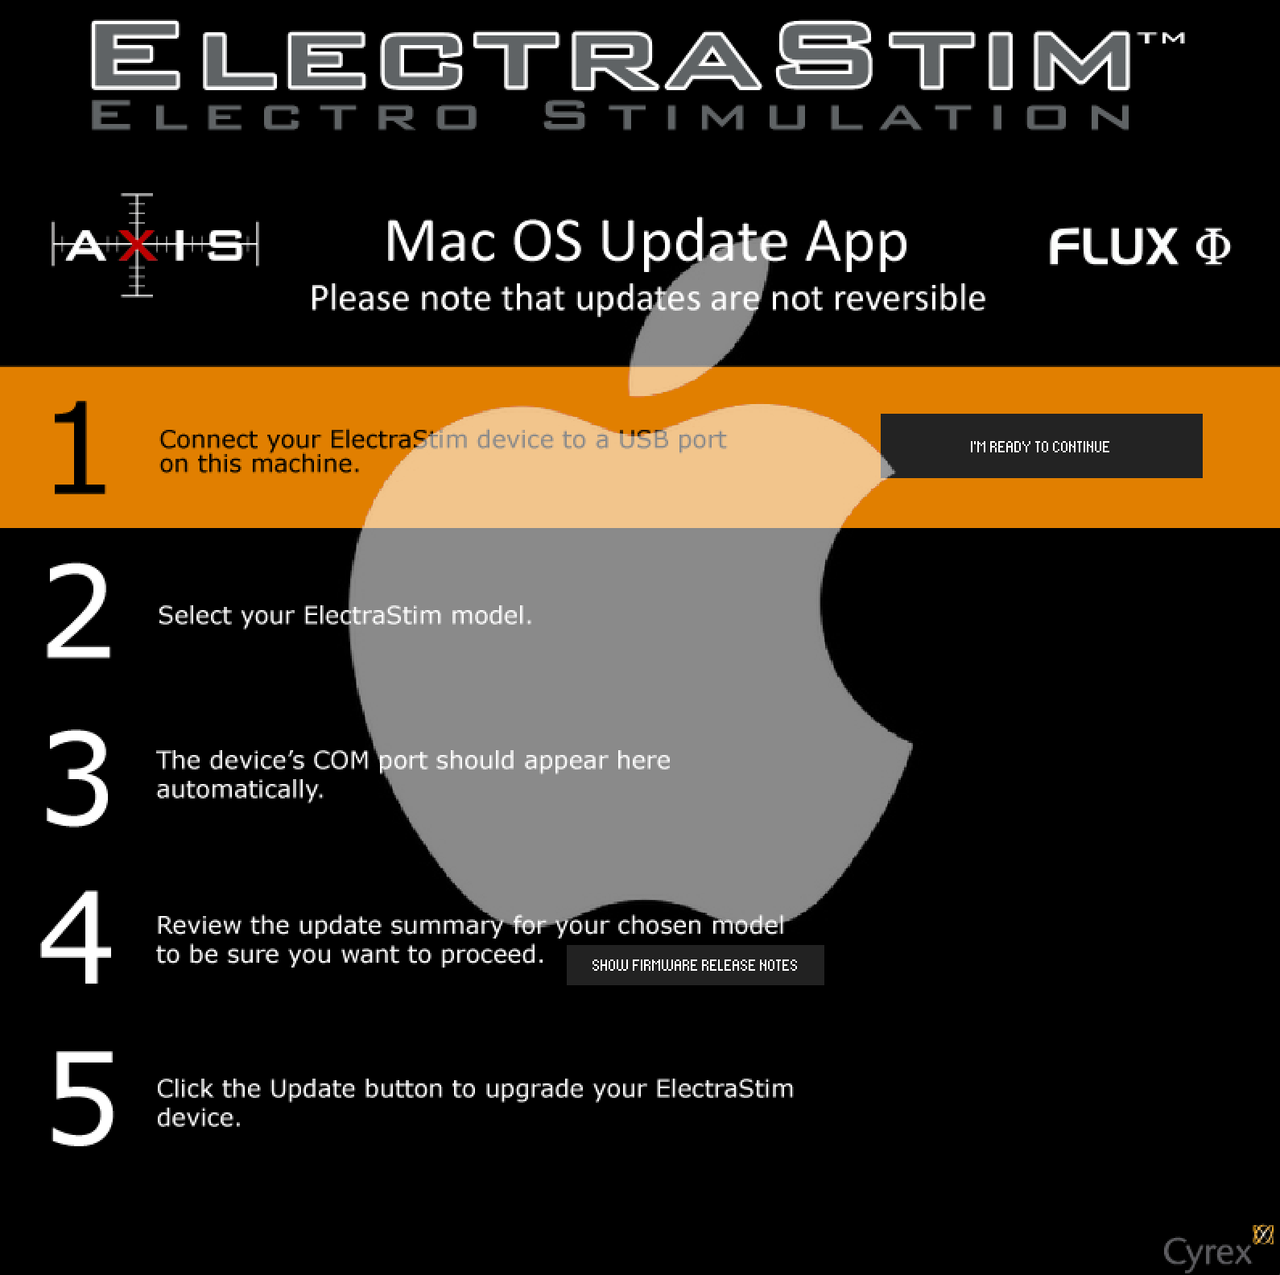 ElectraStim Stimulator Update Software- Mac